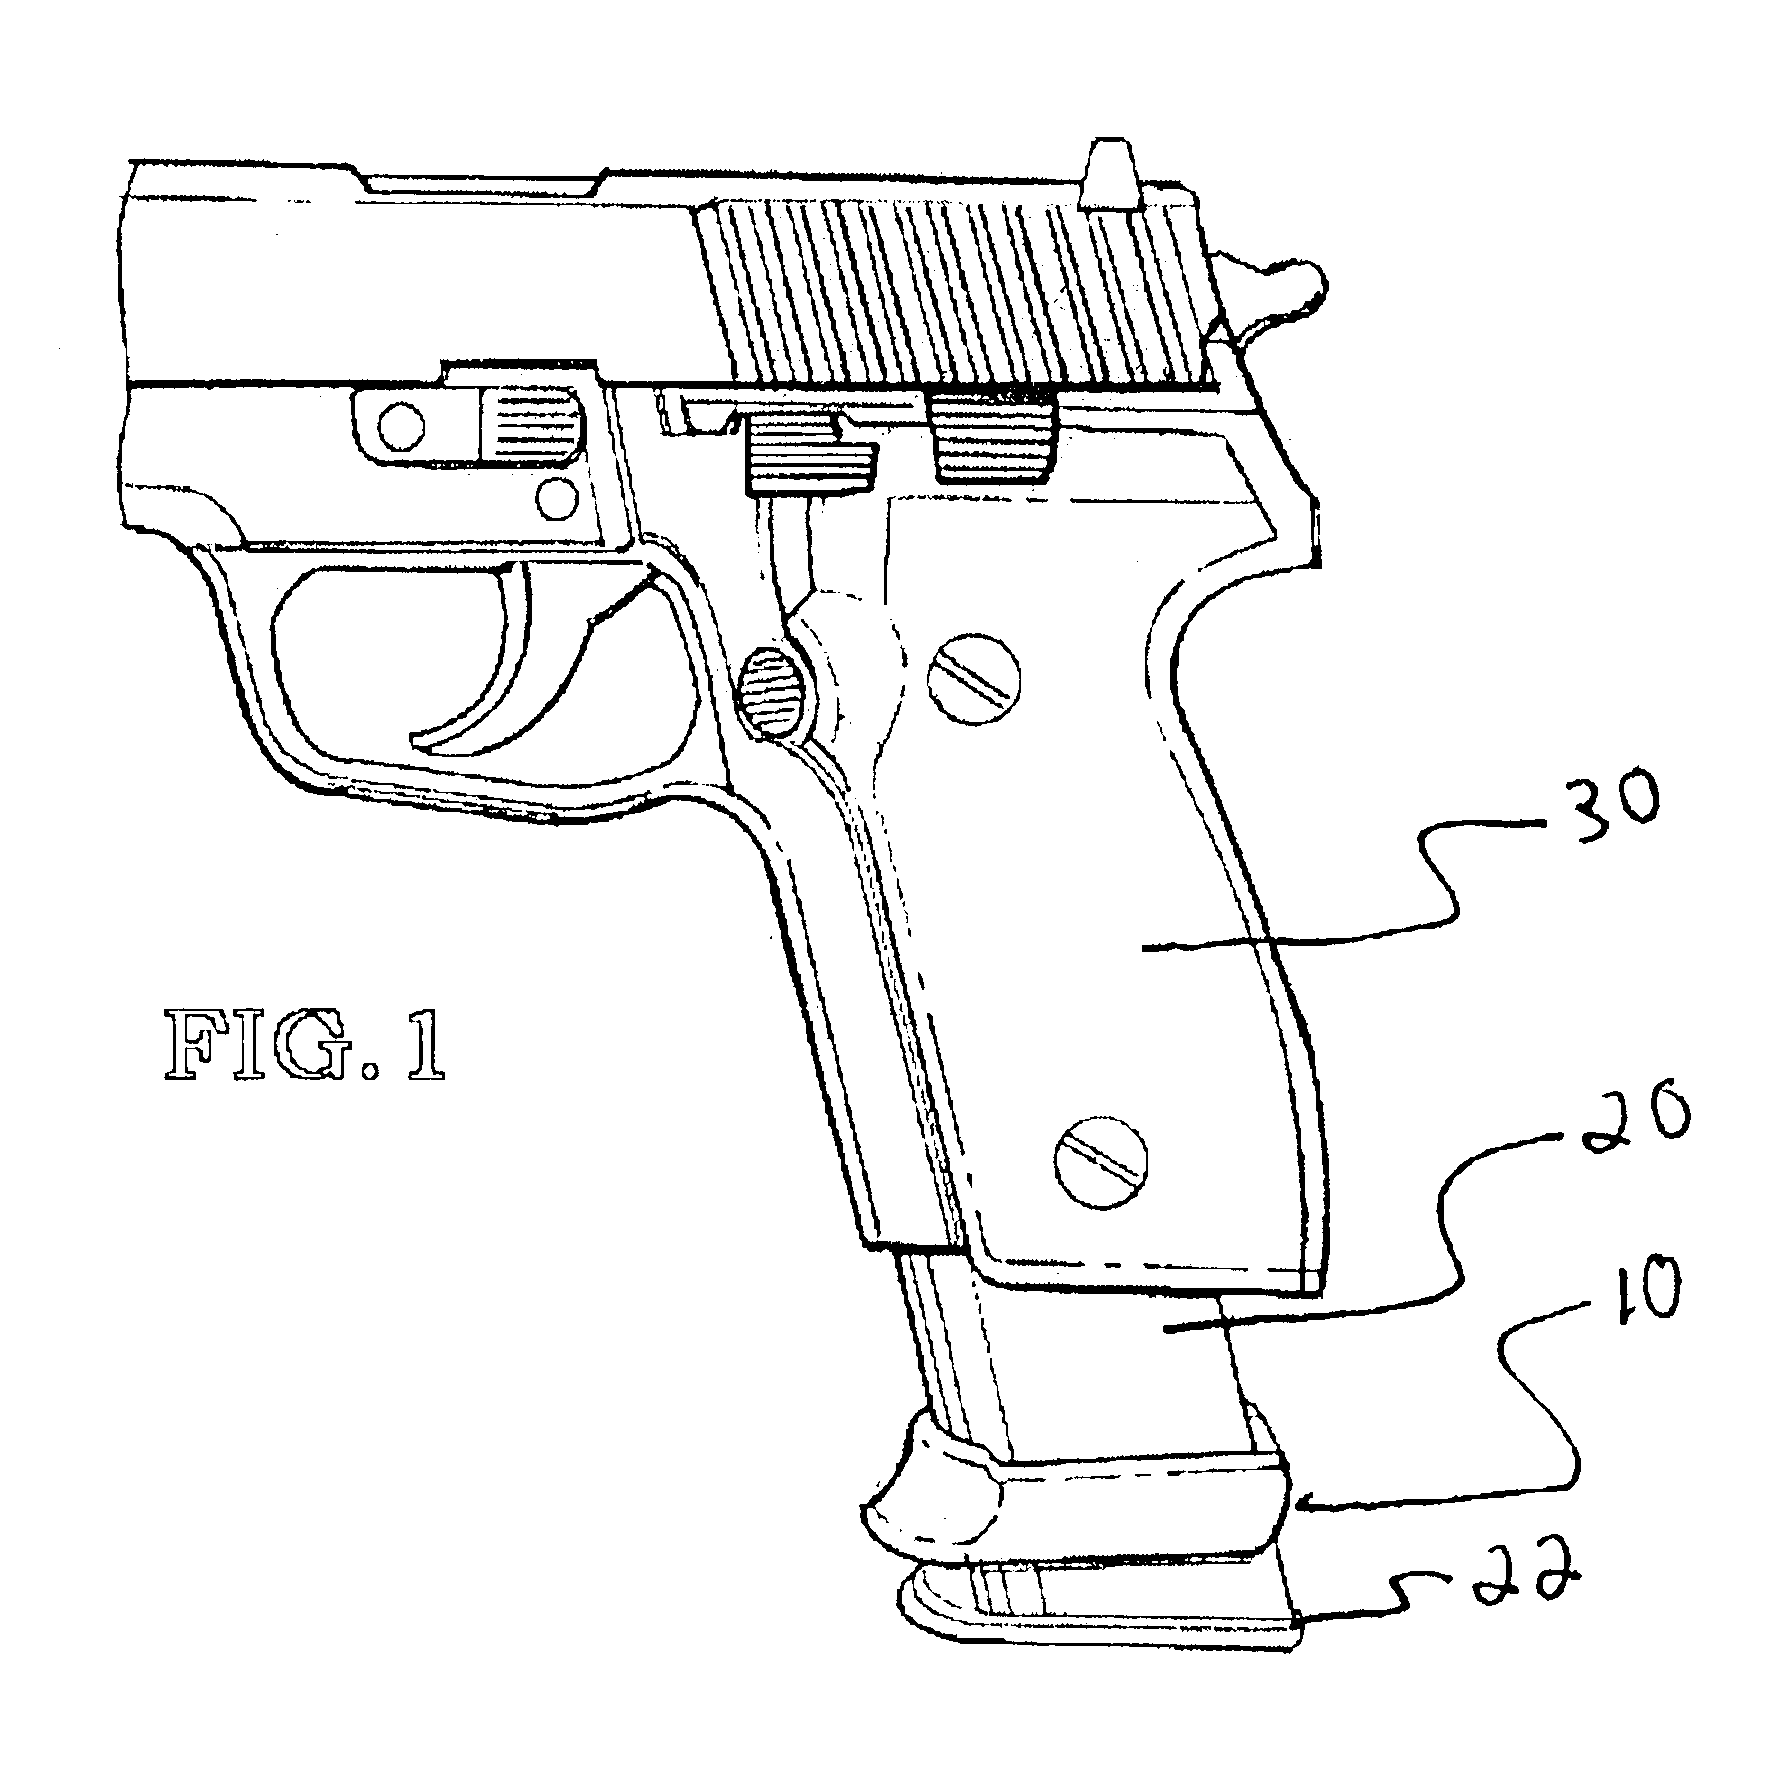 Grip extender for handgun